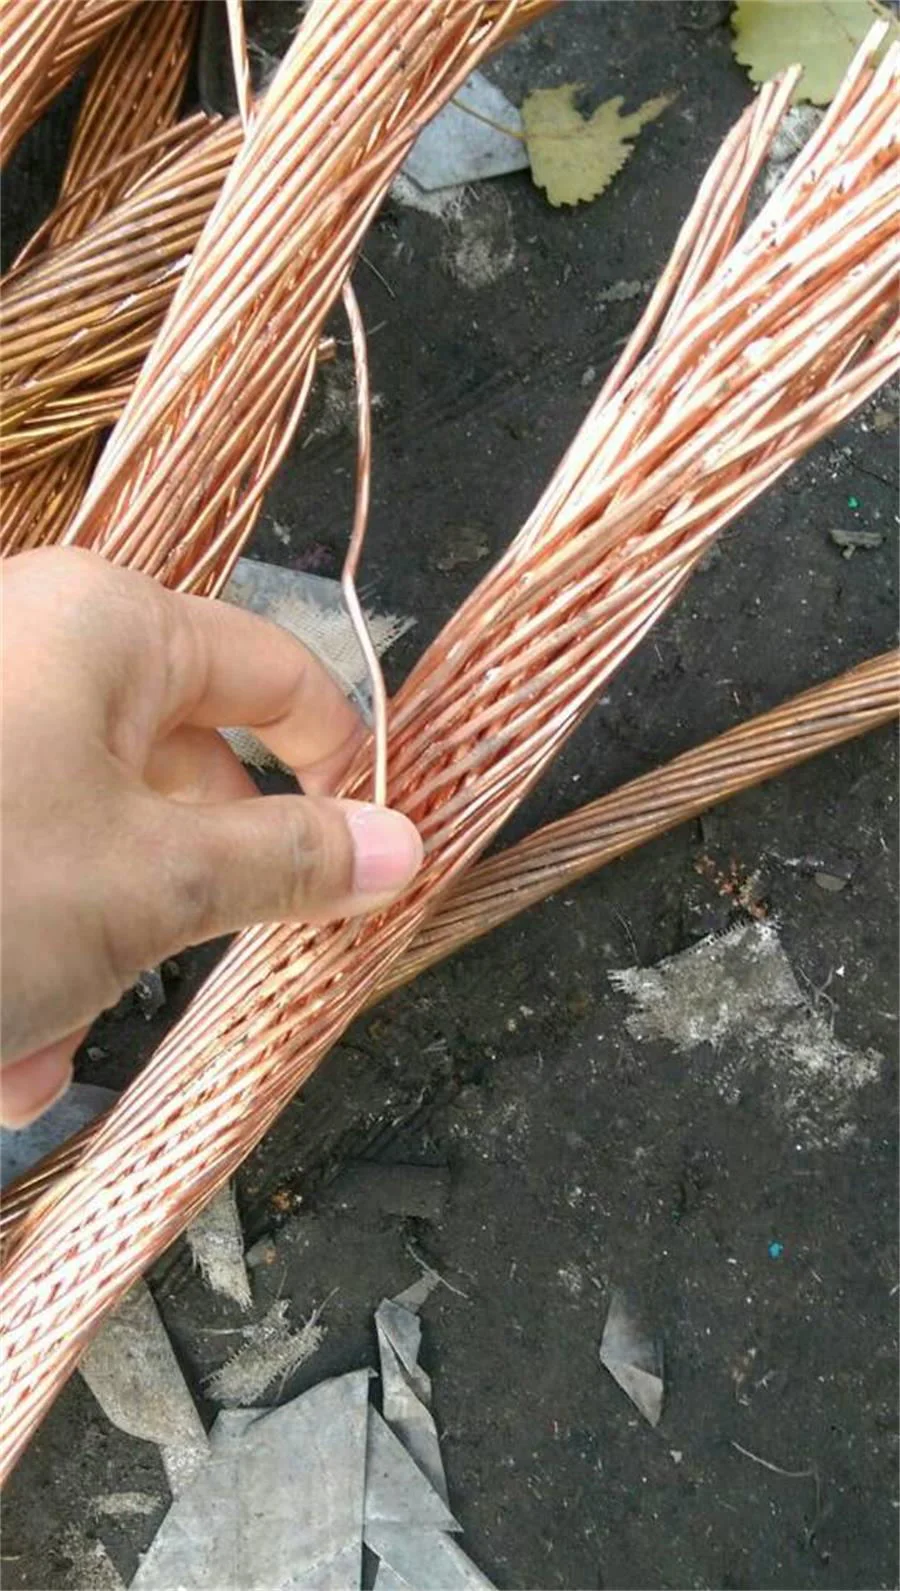 Scrap Copper Wire Copper Wire Copper Scrap Millberry Copper Sheet Copper Tube Copper Wire Millberry